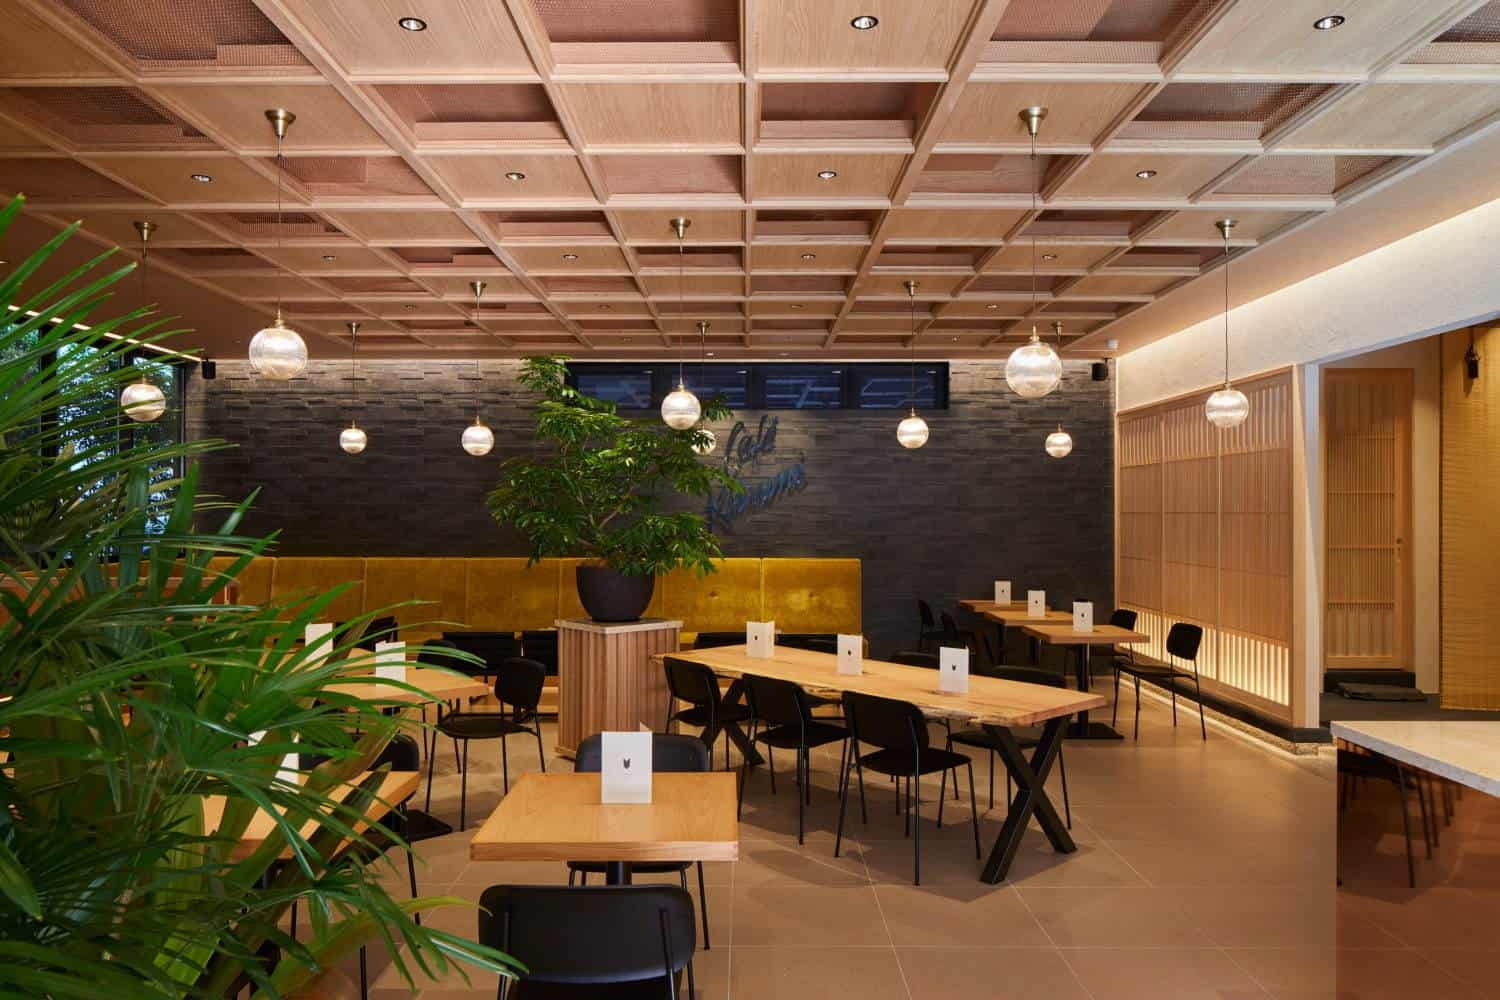  CAFE KITSUNE Aoyama สาขาแรกในญี่ปุ่น เปิดบริการครั้งแรกเมื่อปี ค.ศ. 2013 